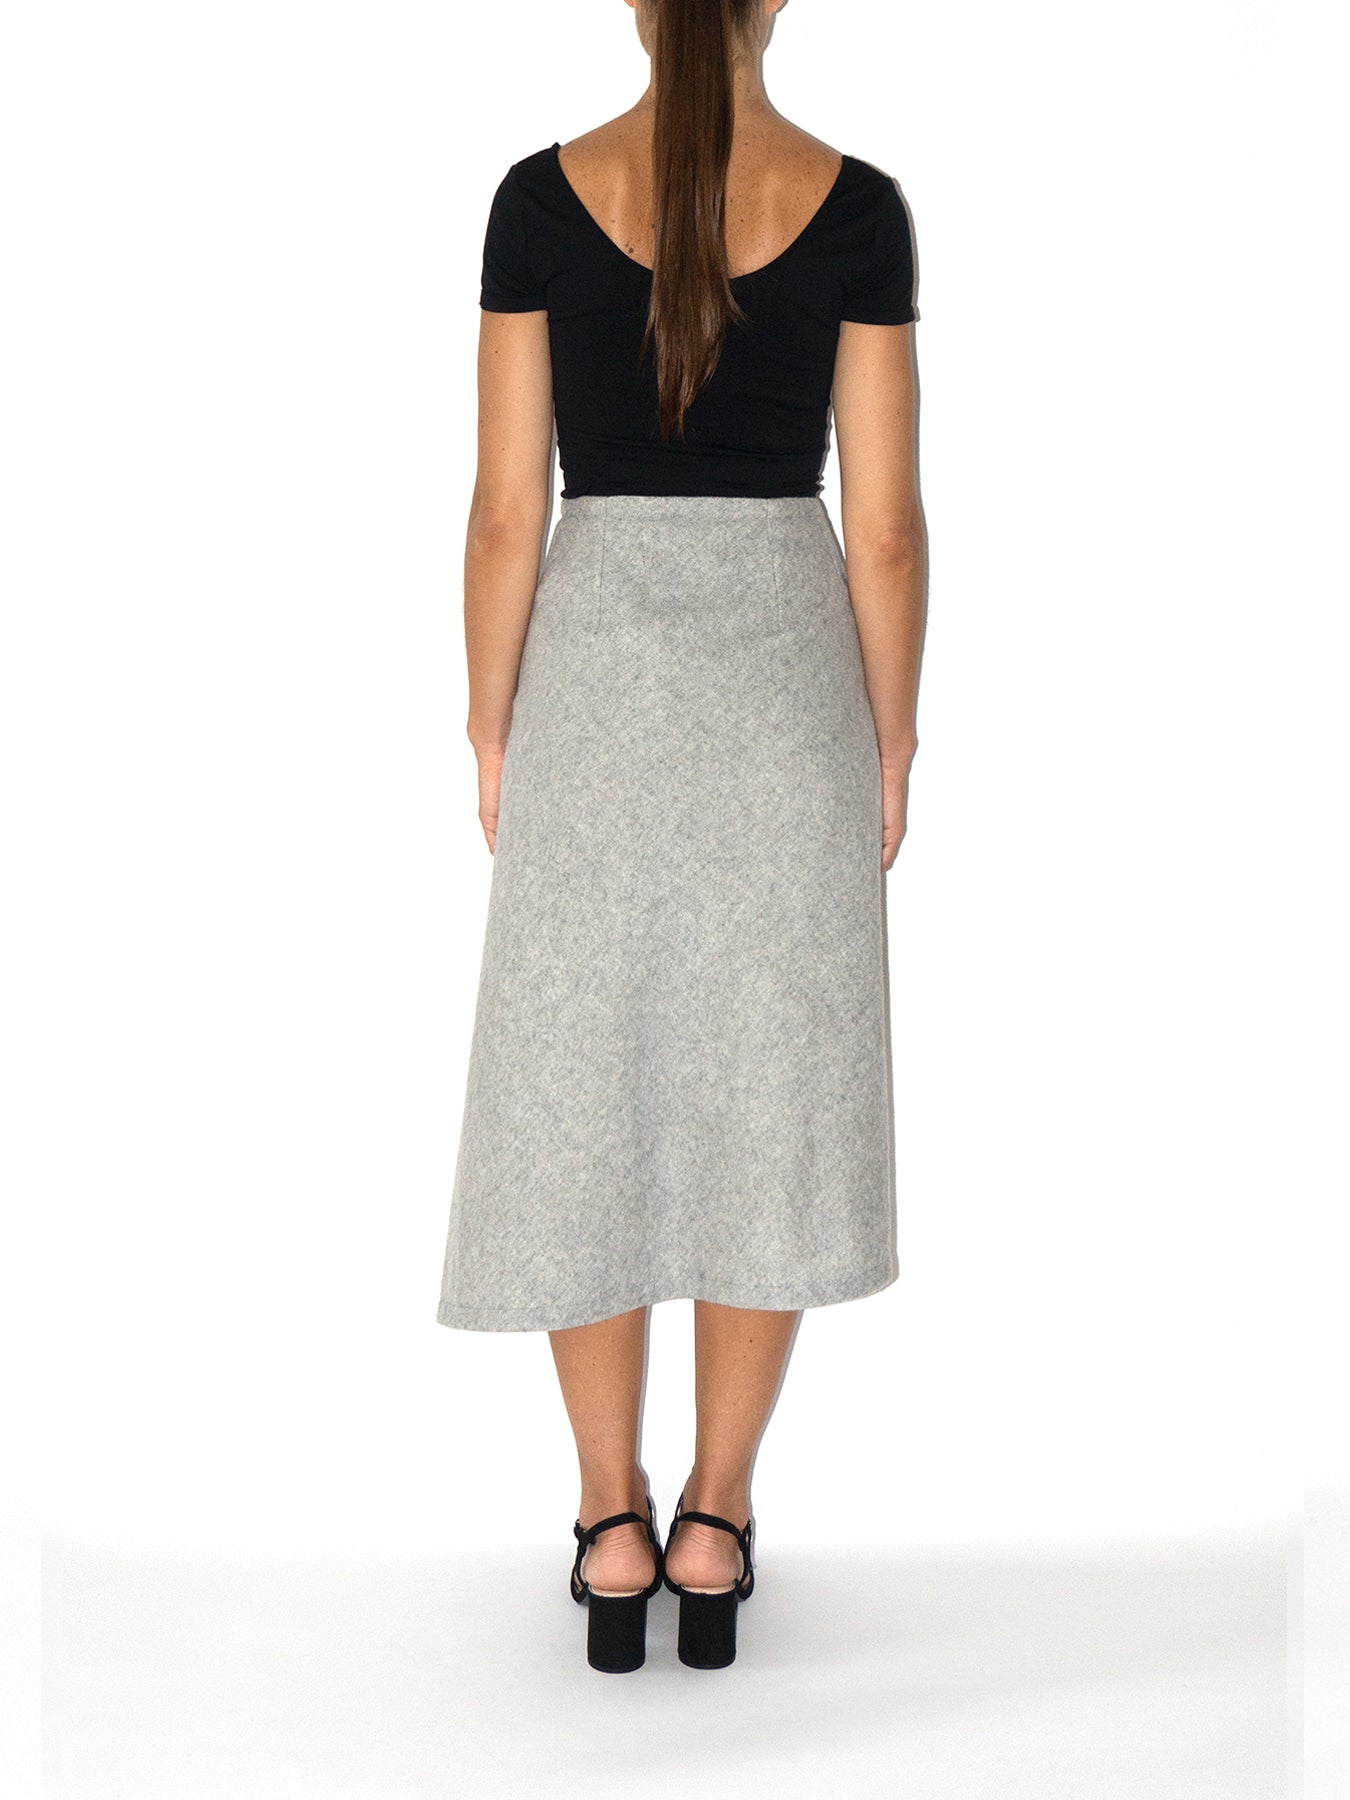 Weaved Eco Vegan Leather Skirt Beige, Luxury Womenswear